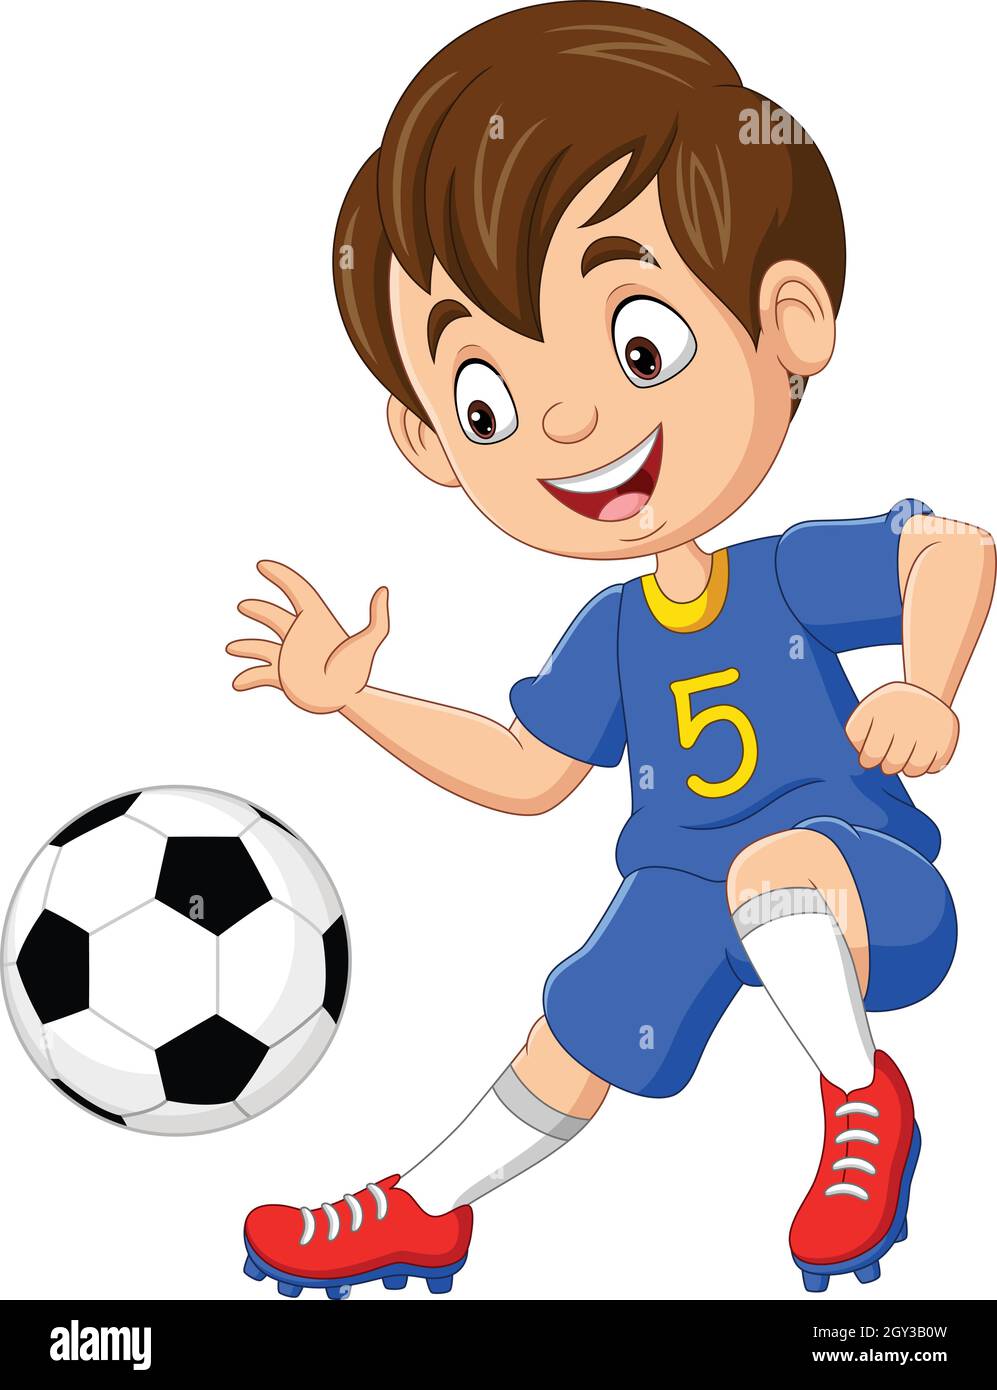 Niños de dibujos animados jugando deportes. fútbol y boxeo para